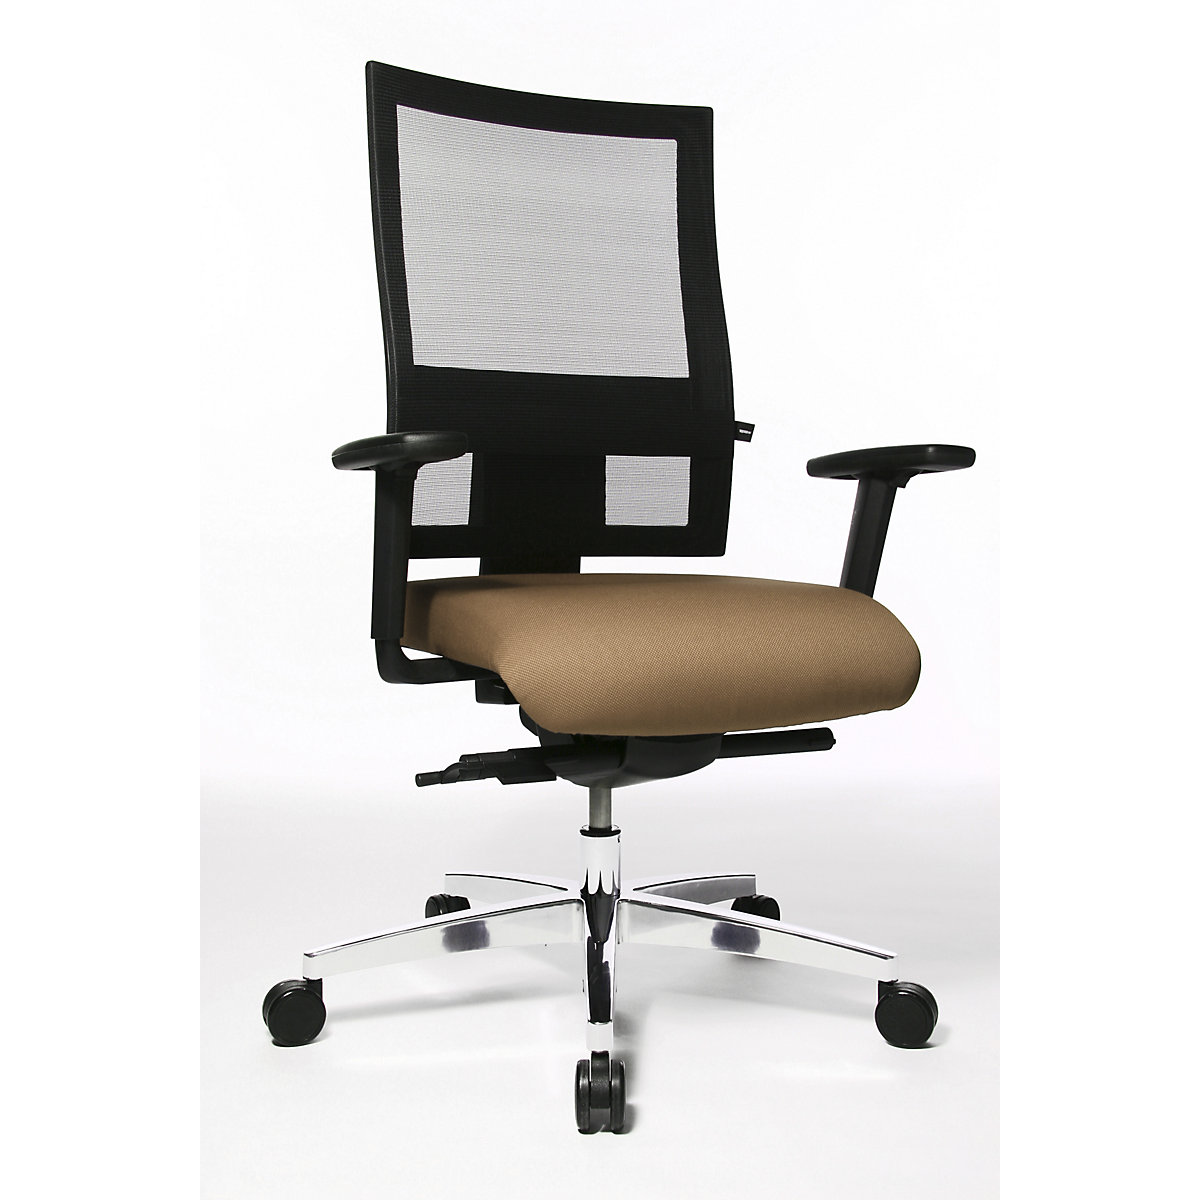 Cadeira giratória de escritório PROFI NET 11 – Topstar, apoios para os braços ajustáveis em altura com apoio softpad, castanho claro-6